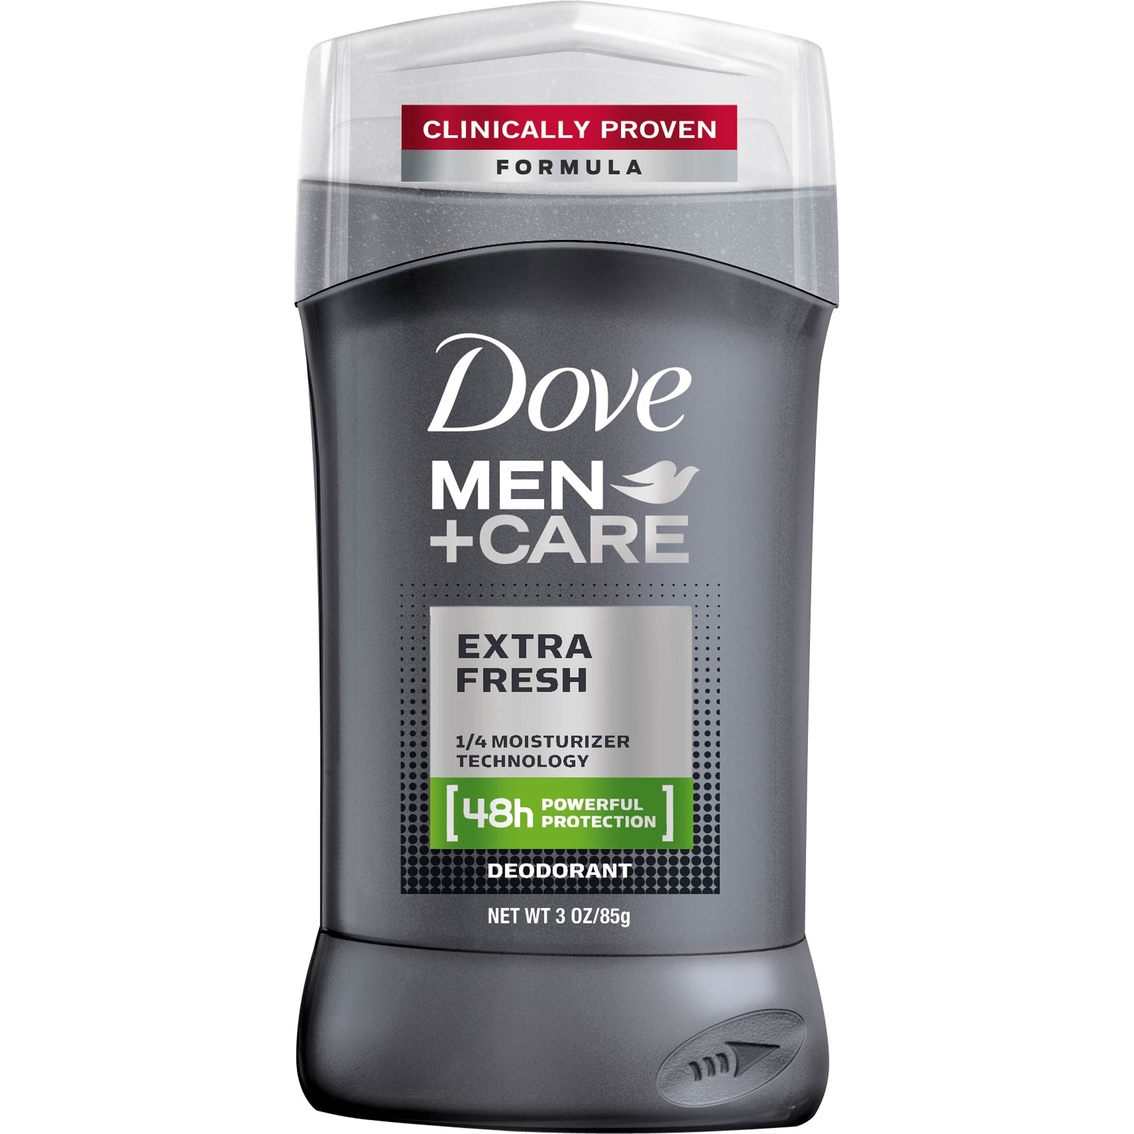 Dove Men + Care Extra Fresh Deodorant 3 oz.